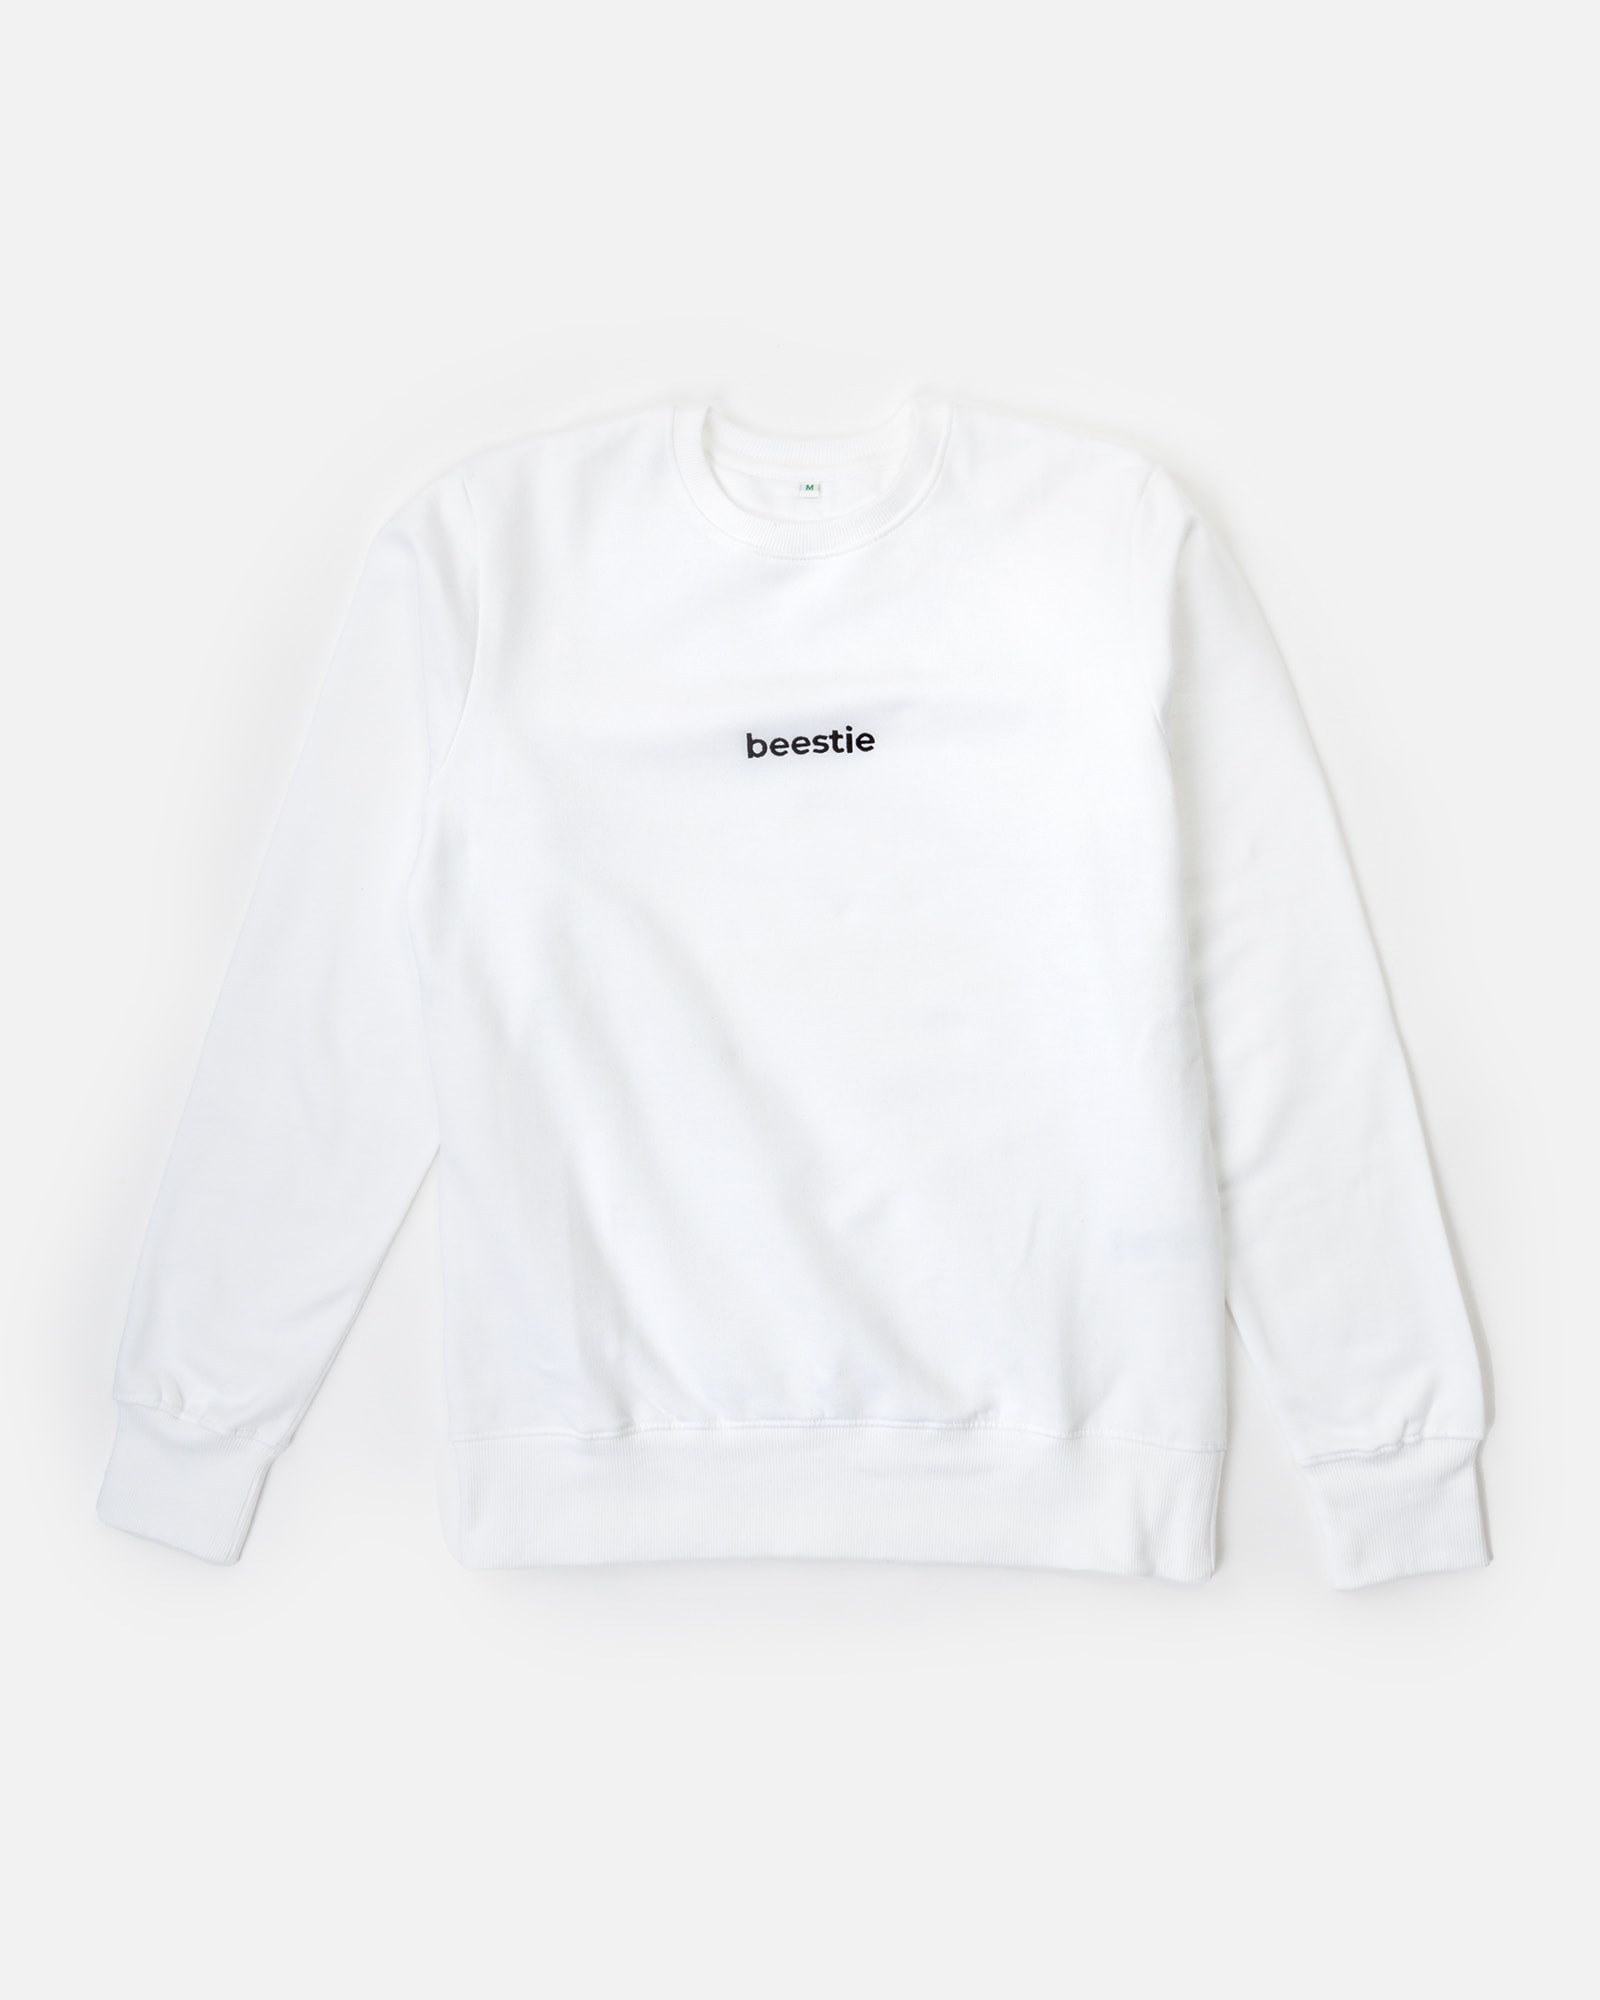 Produktbild des Organic beestie Sweatshirt Unisex White